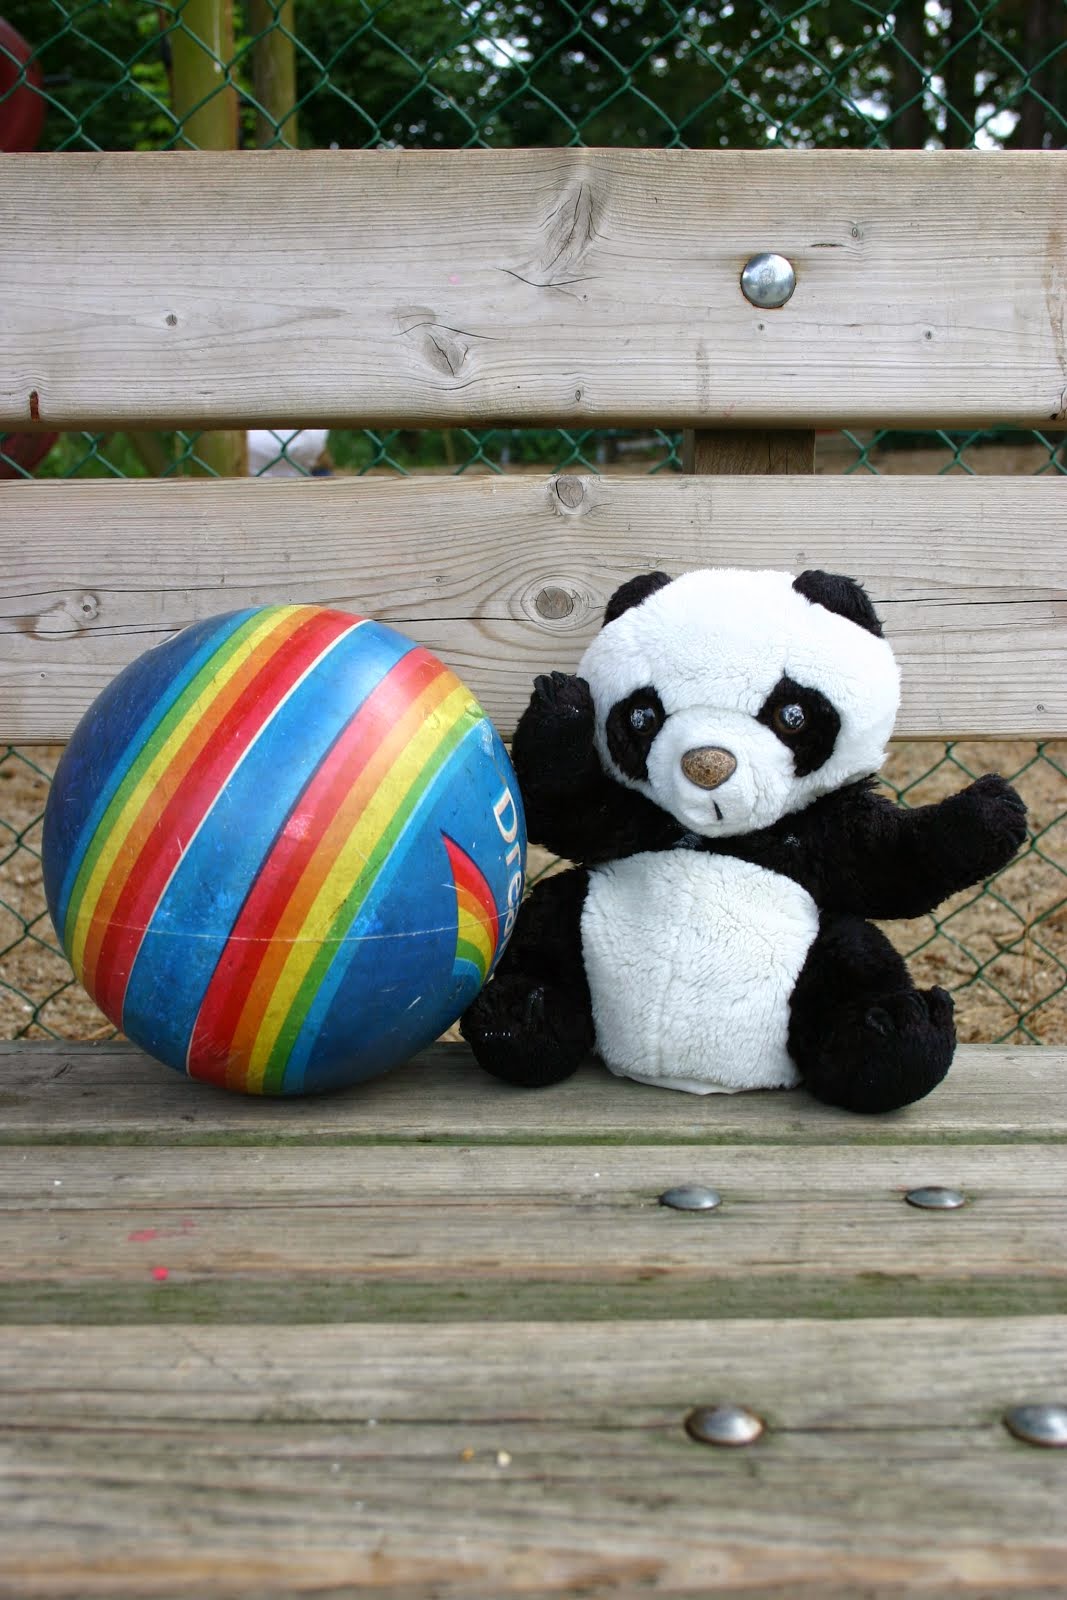 Onze klaspop Panda